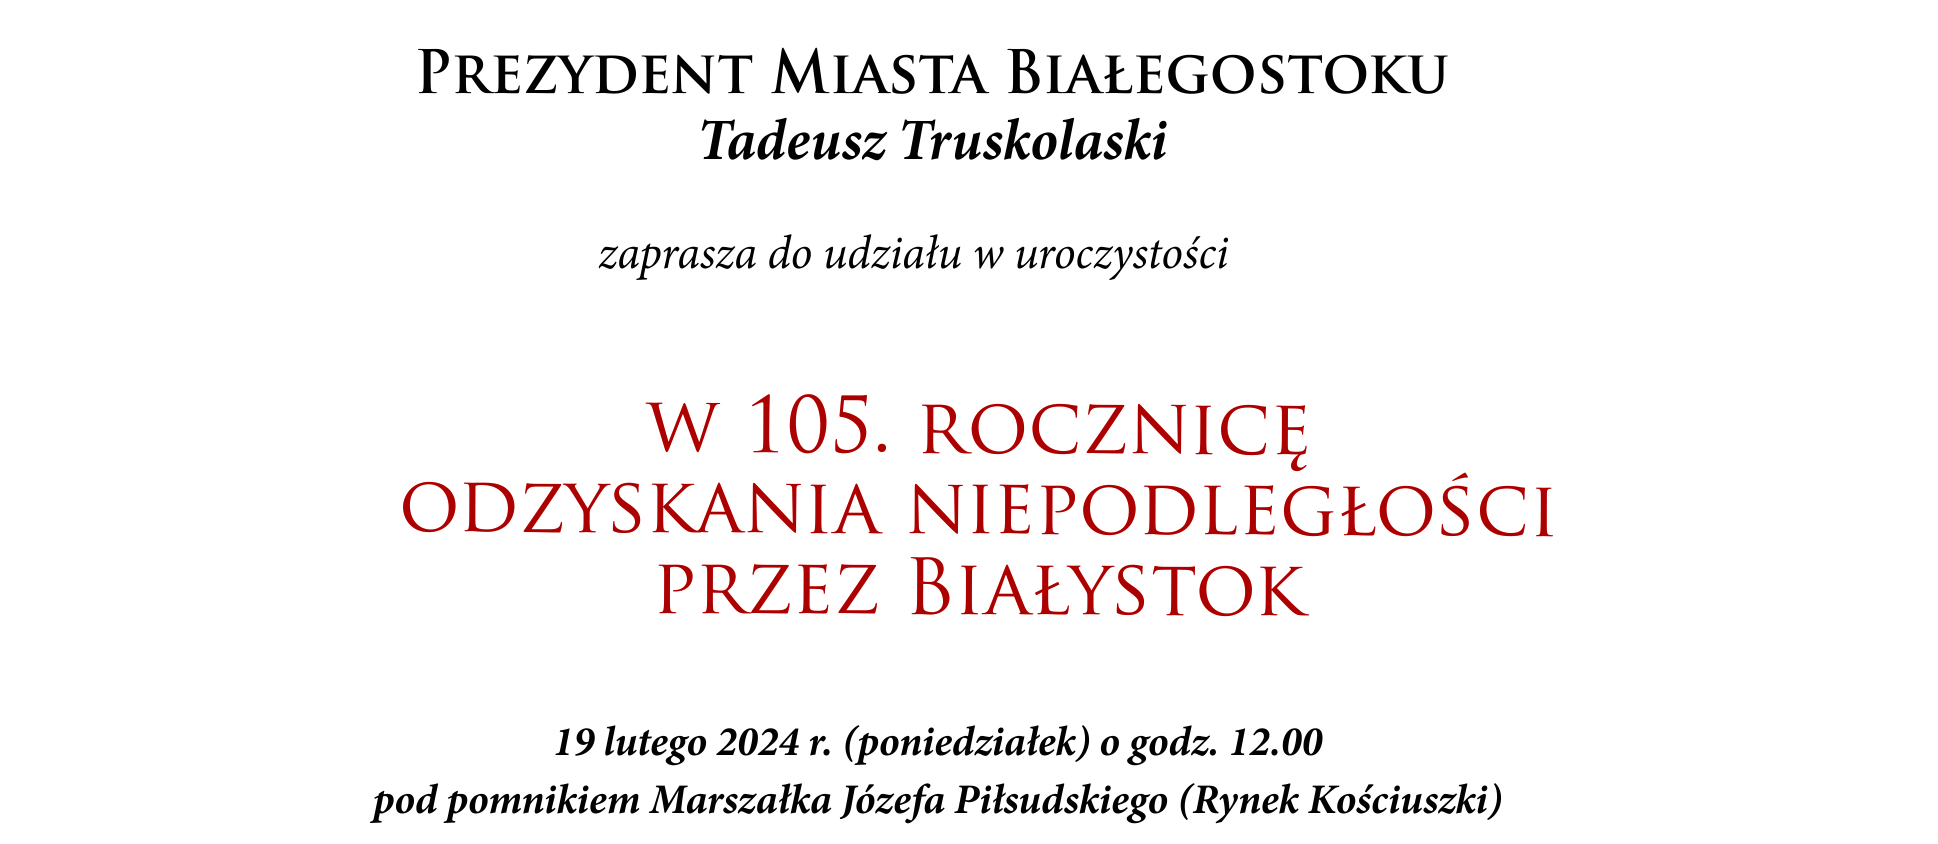 Prezydent Miasta Białegostoku Tadeusz Truskolaski zaprasza do udziału w 105. Rocznicę Odzyskania Niepodległości przez Białystok